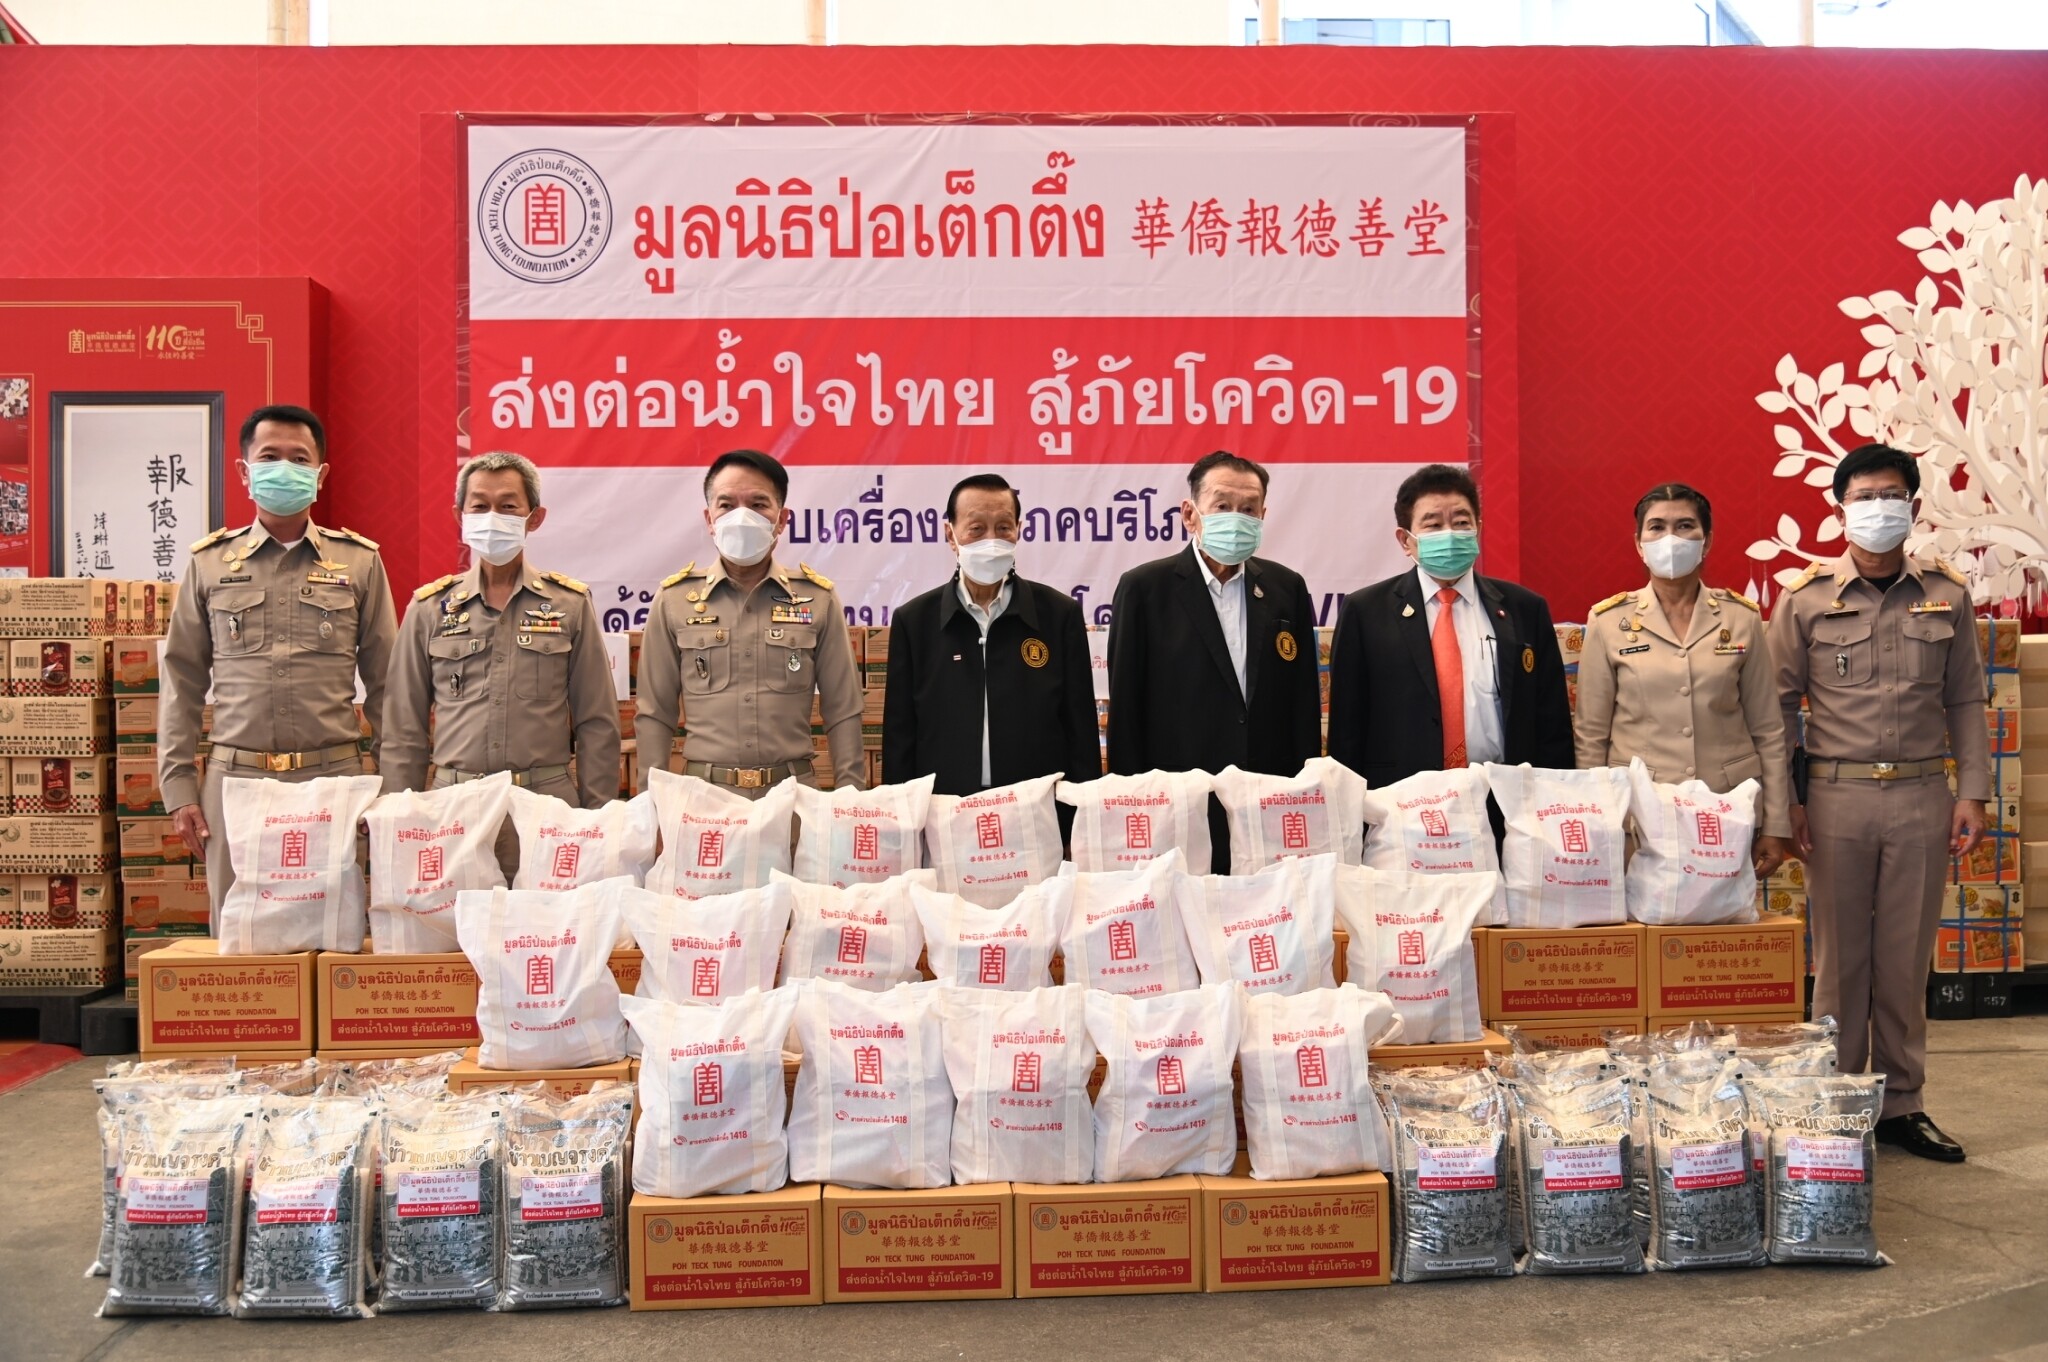 มูลนิธิป่อเต็กตึ๊ง ปล่อยขบวน ส่งต่อน้ำใจไทย ยกทัพเครื่องอุปโภคบริโภคลงพื้นที่ 50 เขตกรุงเทพฯ บรรเทาทุกข์ผู้ว่างงาน ตกงาน ขาดรายได้ สู้ภัยโควิด-19